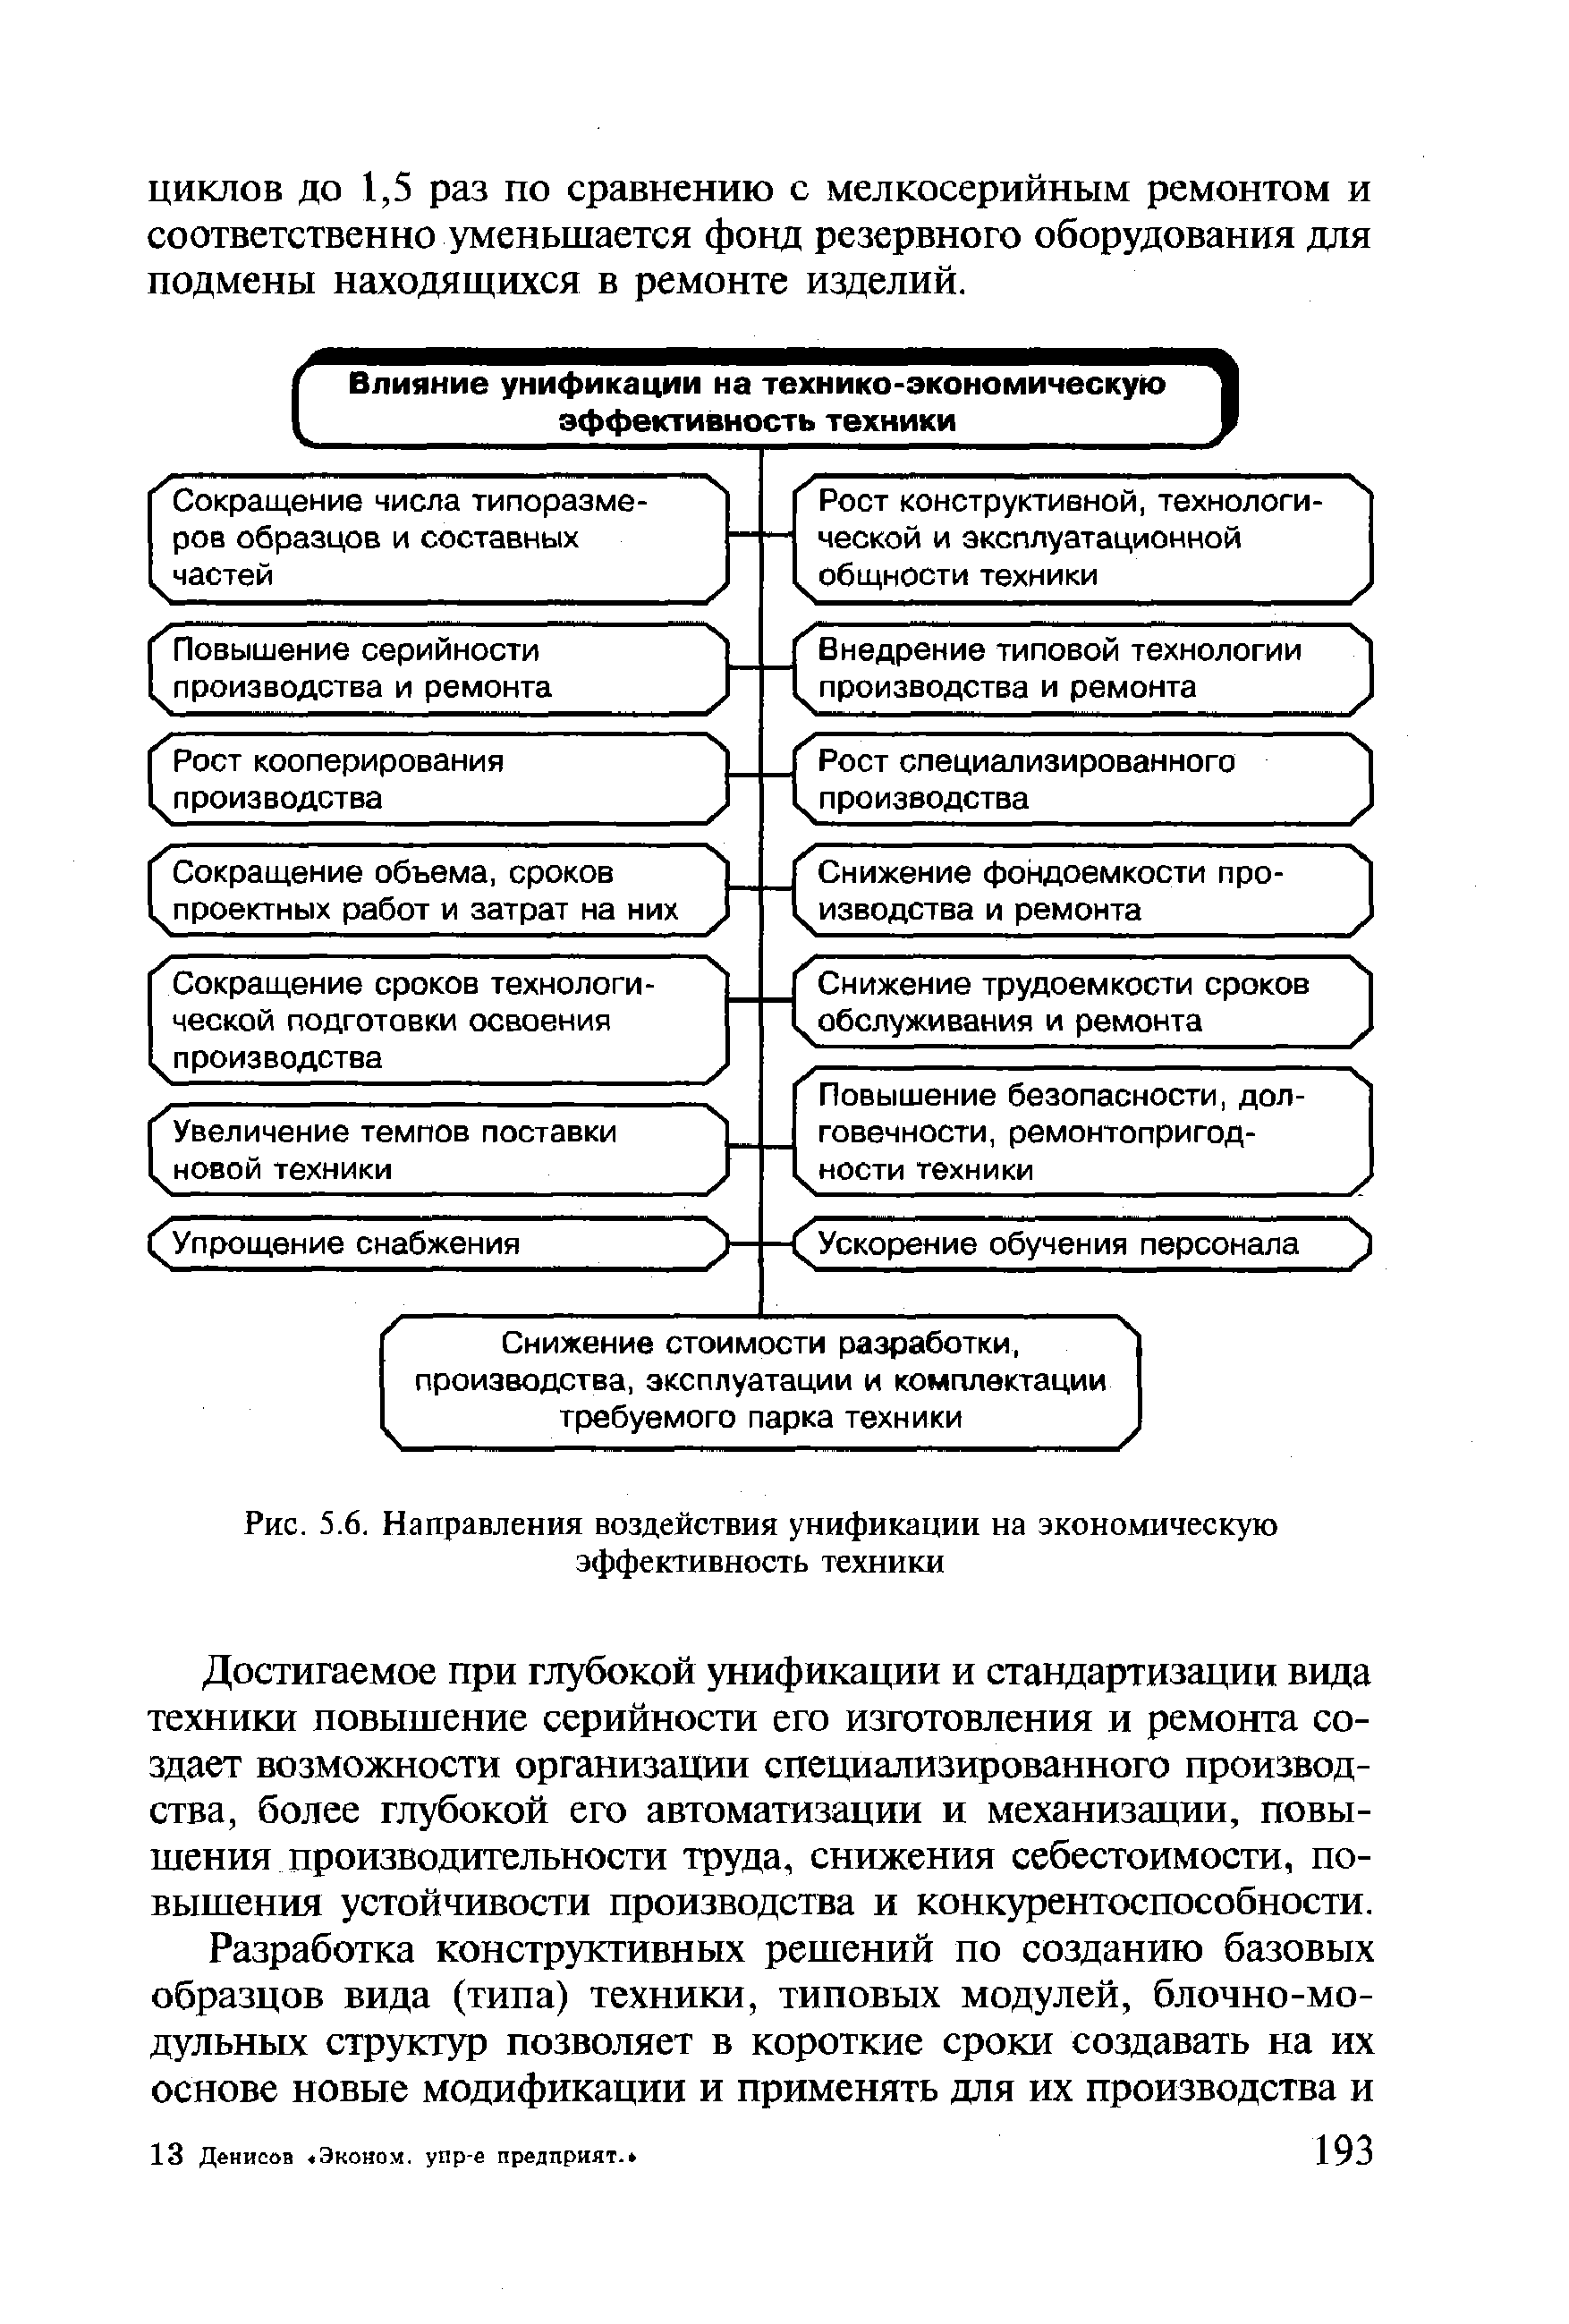 Рис. 5.6. Направления воздействия унификации на <a href="/info/1825">экономическую эффективность</a> техники
